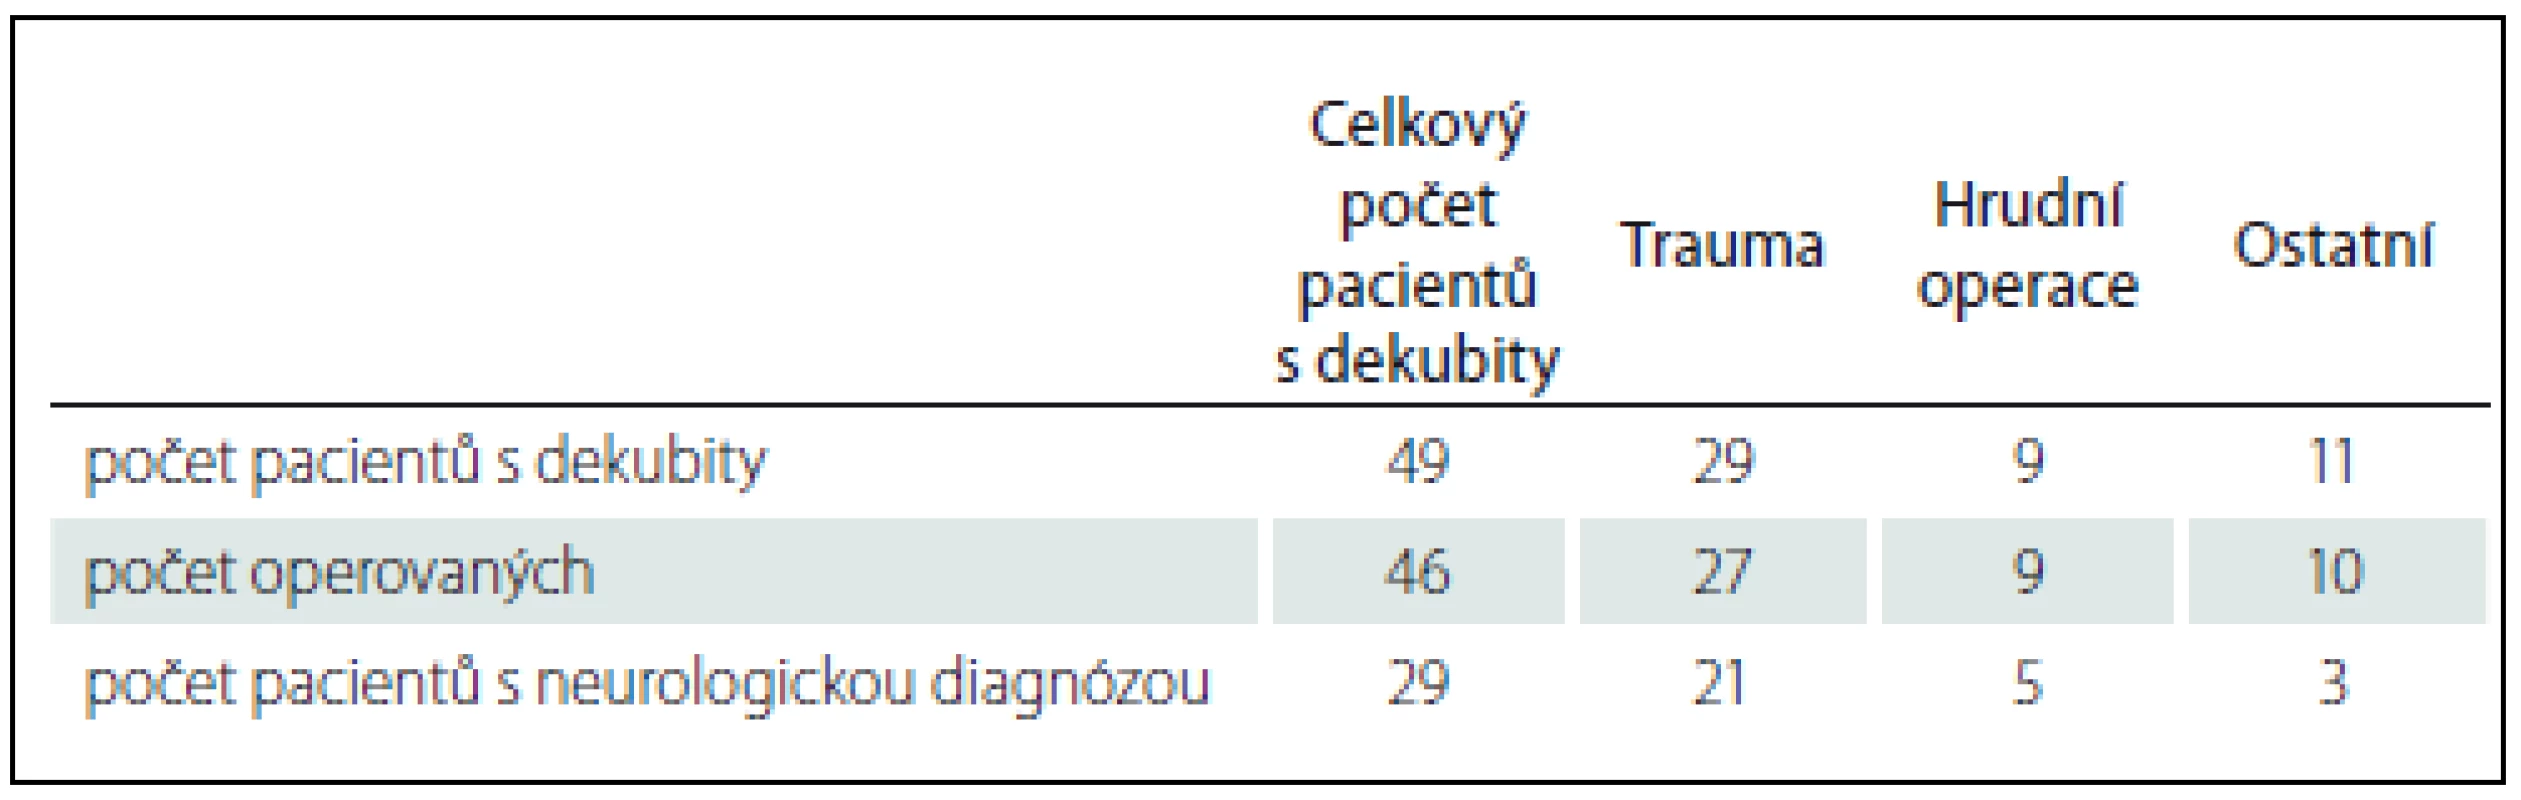 Celkový přehled pacientů s dekubity dle diagnózy a operace.